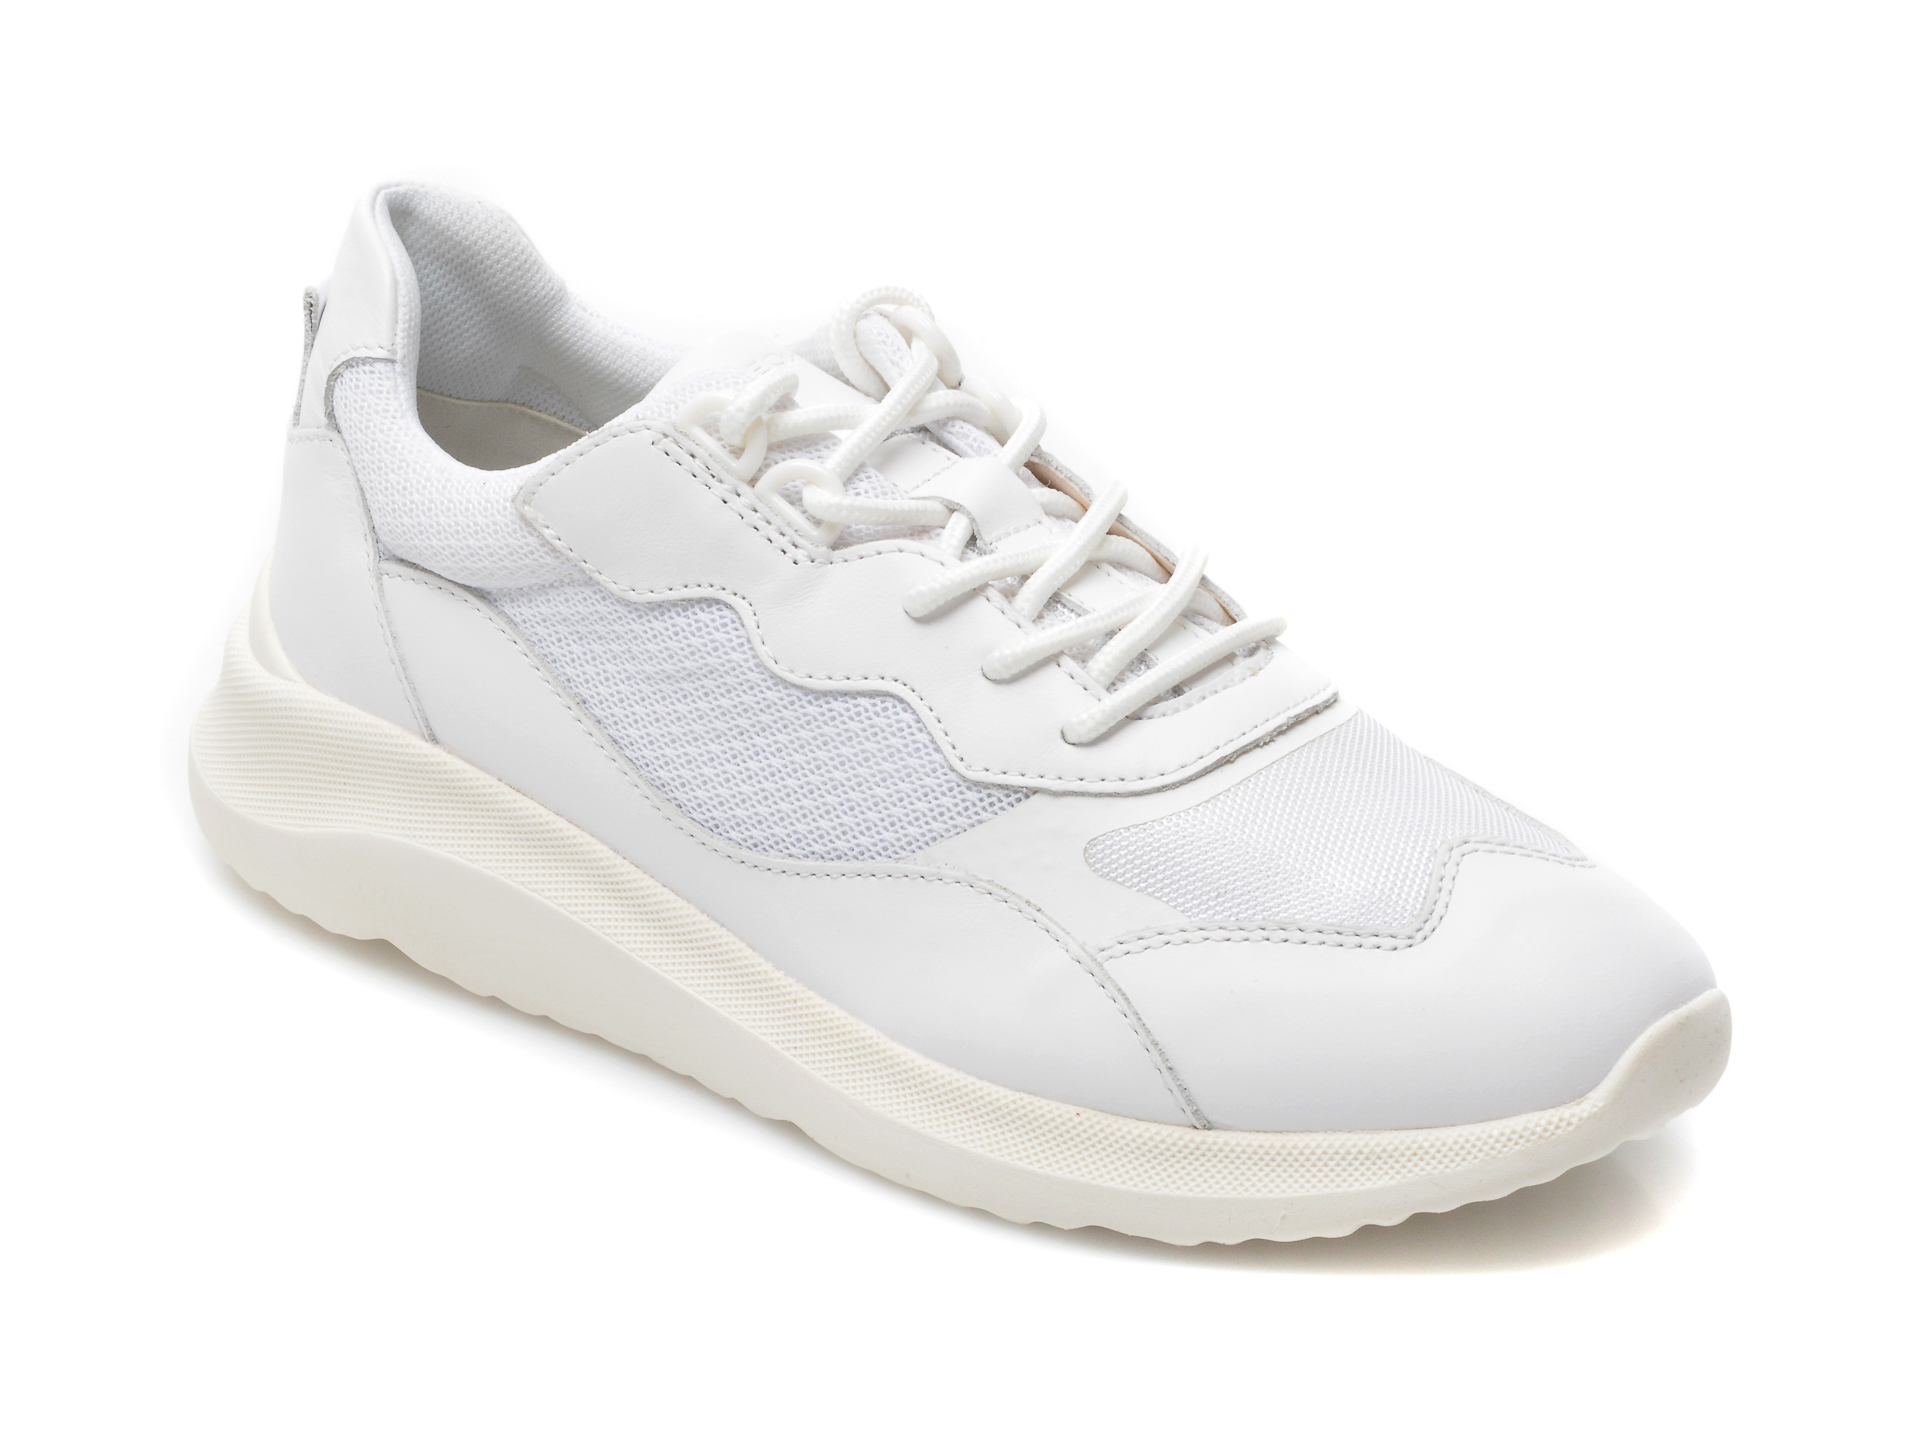 Pantofi sport GEOX albi, D15NXG, din piele naturala Geox Geox